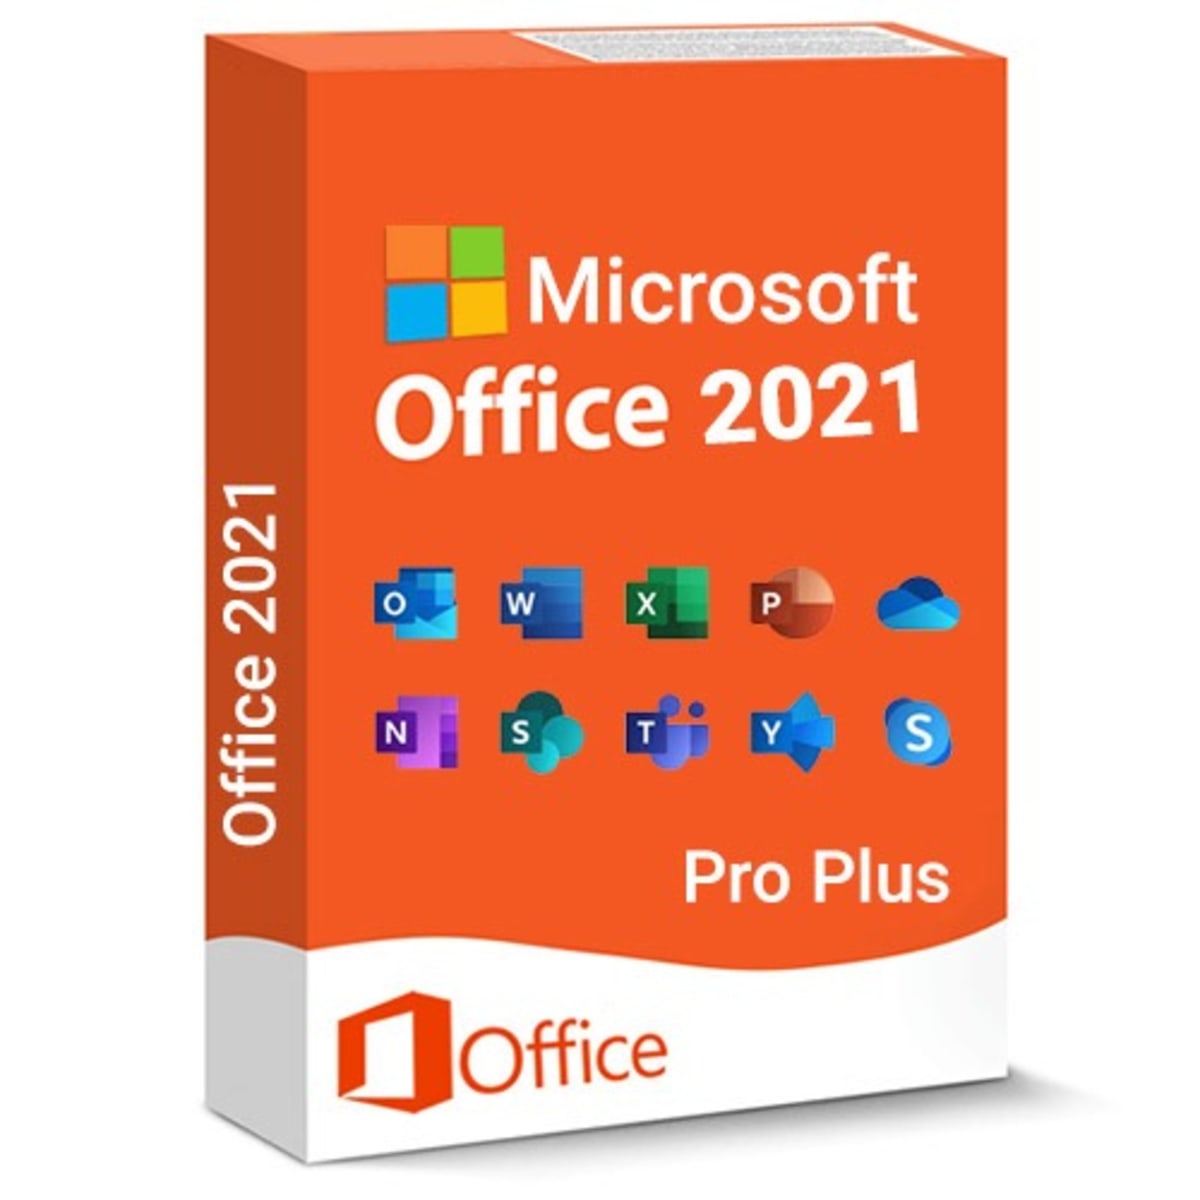 Microsoft Office 2021 Professional Plus マイクロソフト公式サイトからのダウンロード 1PC プロダクトキー 正規版 再インストール 永続office 2021